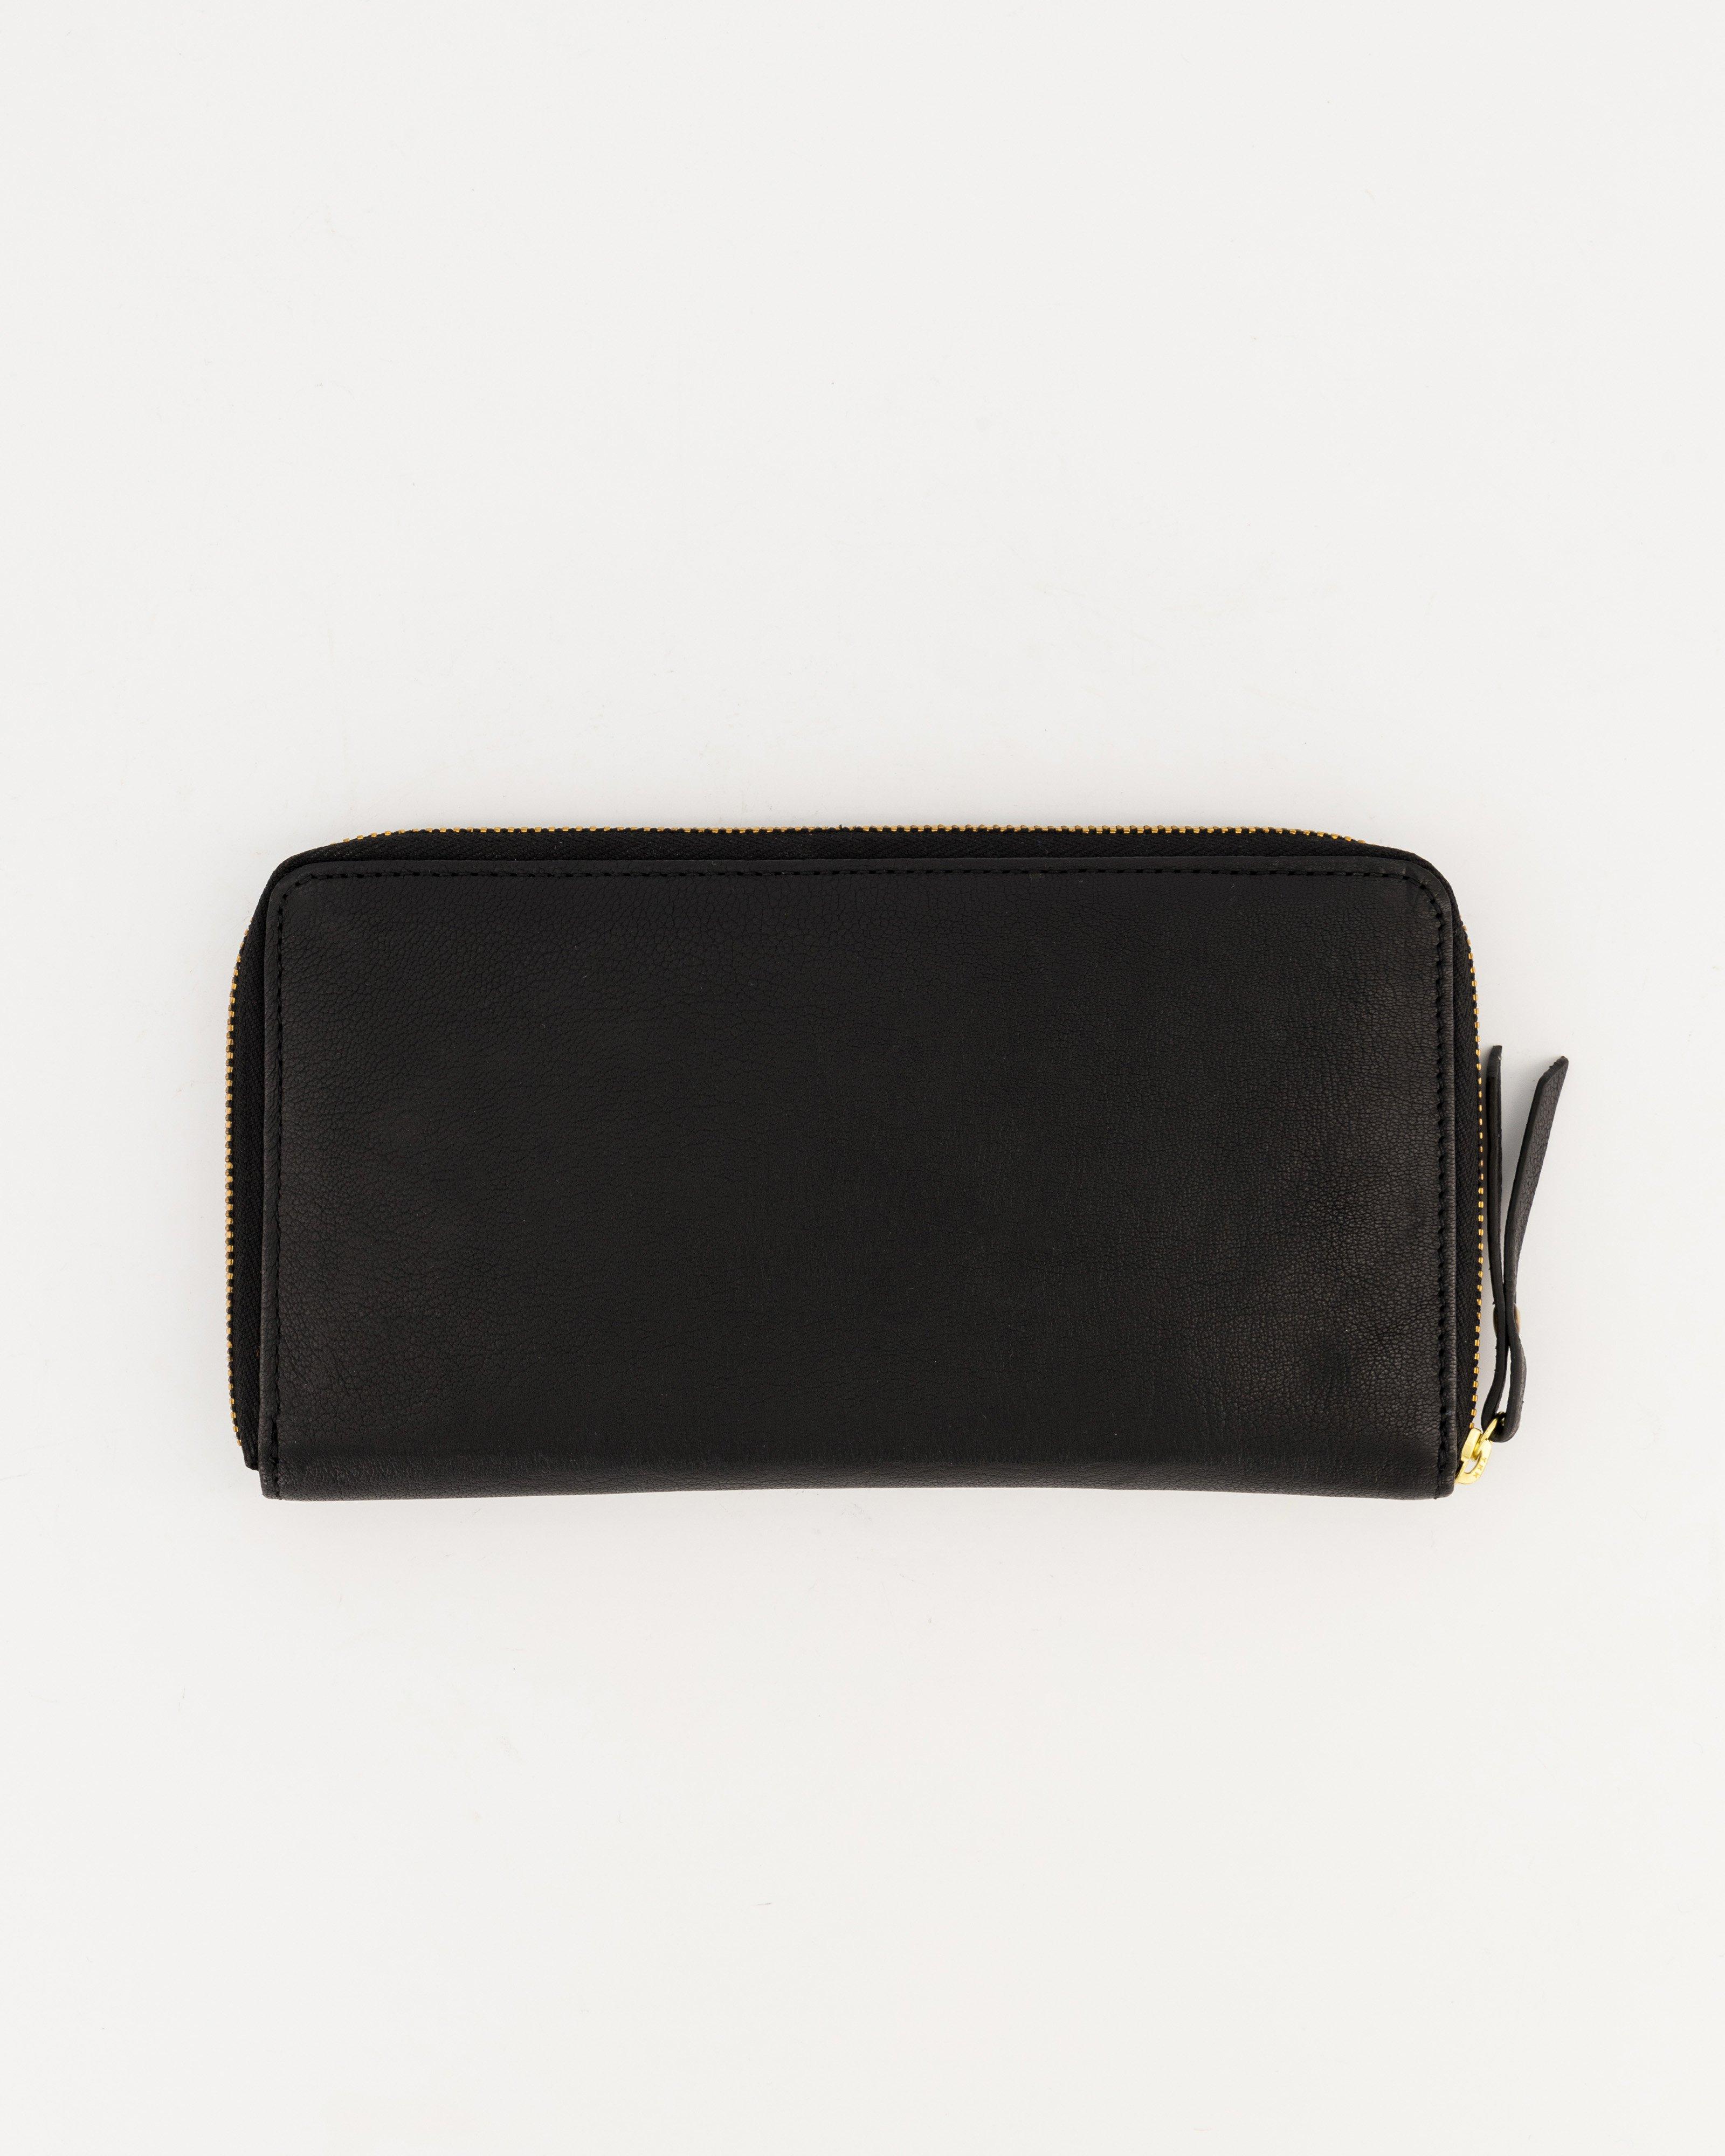 Heloise Pocket Wallet -  Black